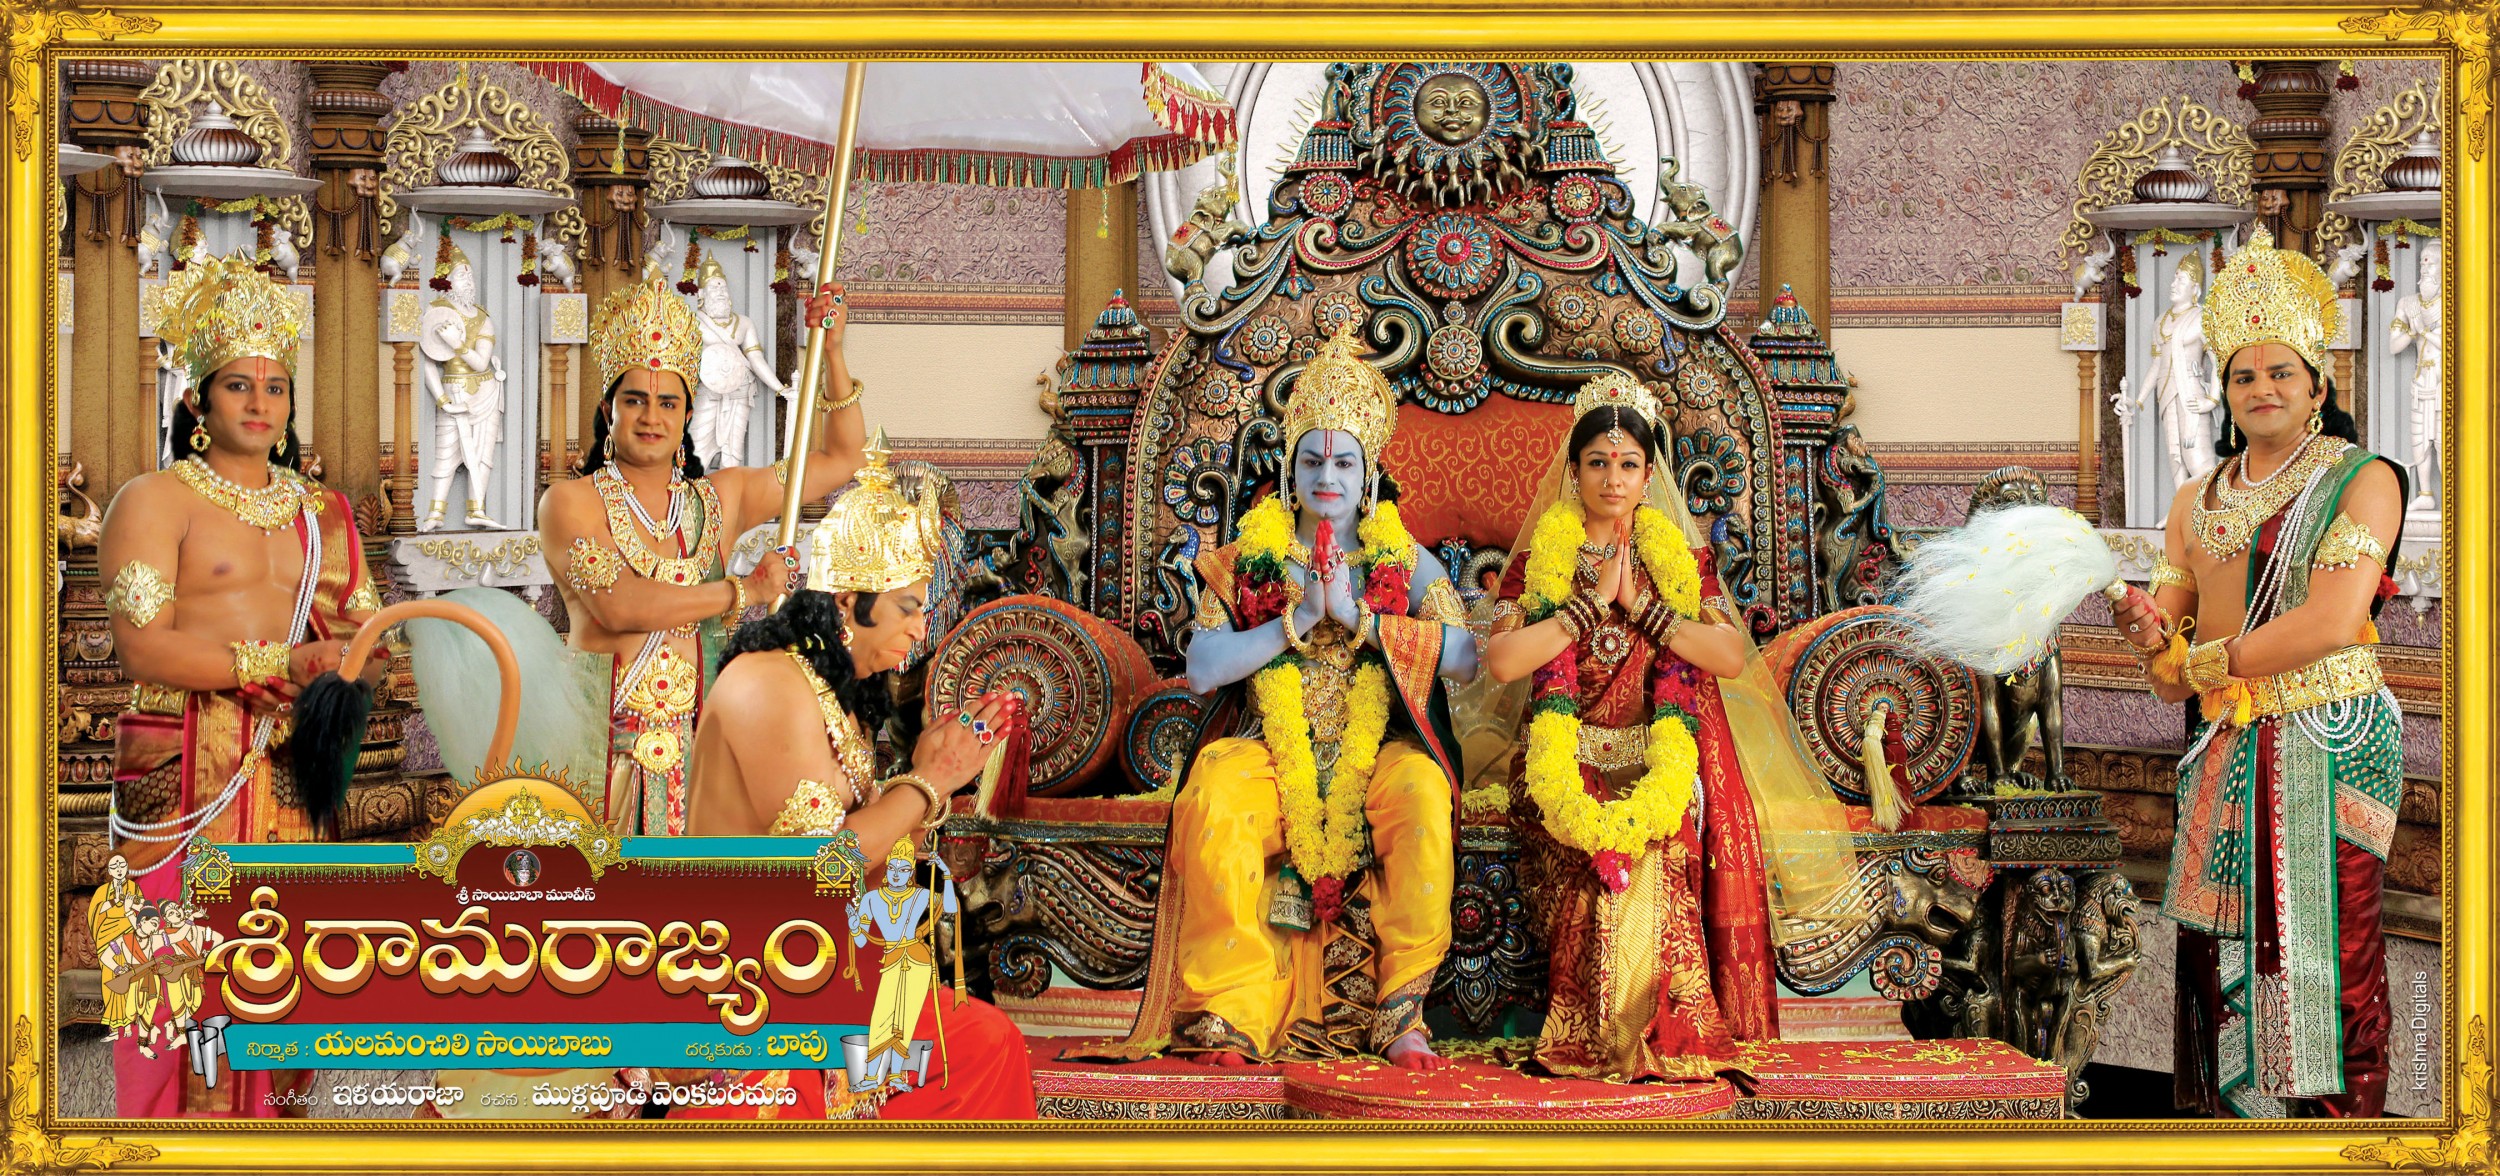 Mega Sized Movie Poster Image for Sri Rama Rajyam (#4 of 10)